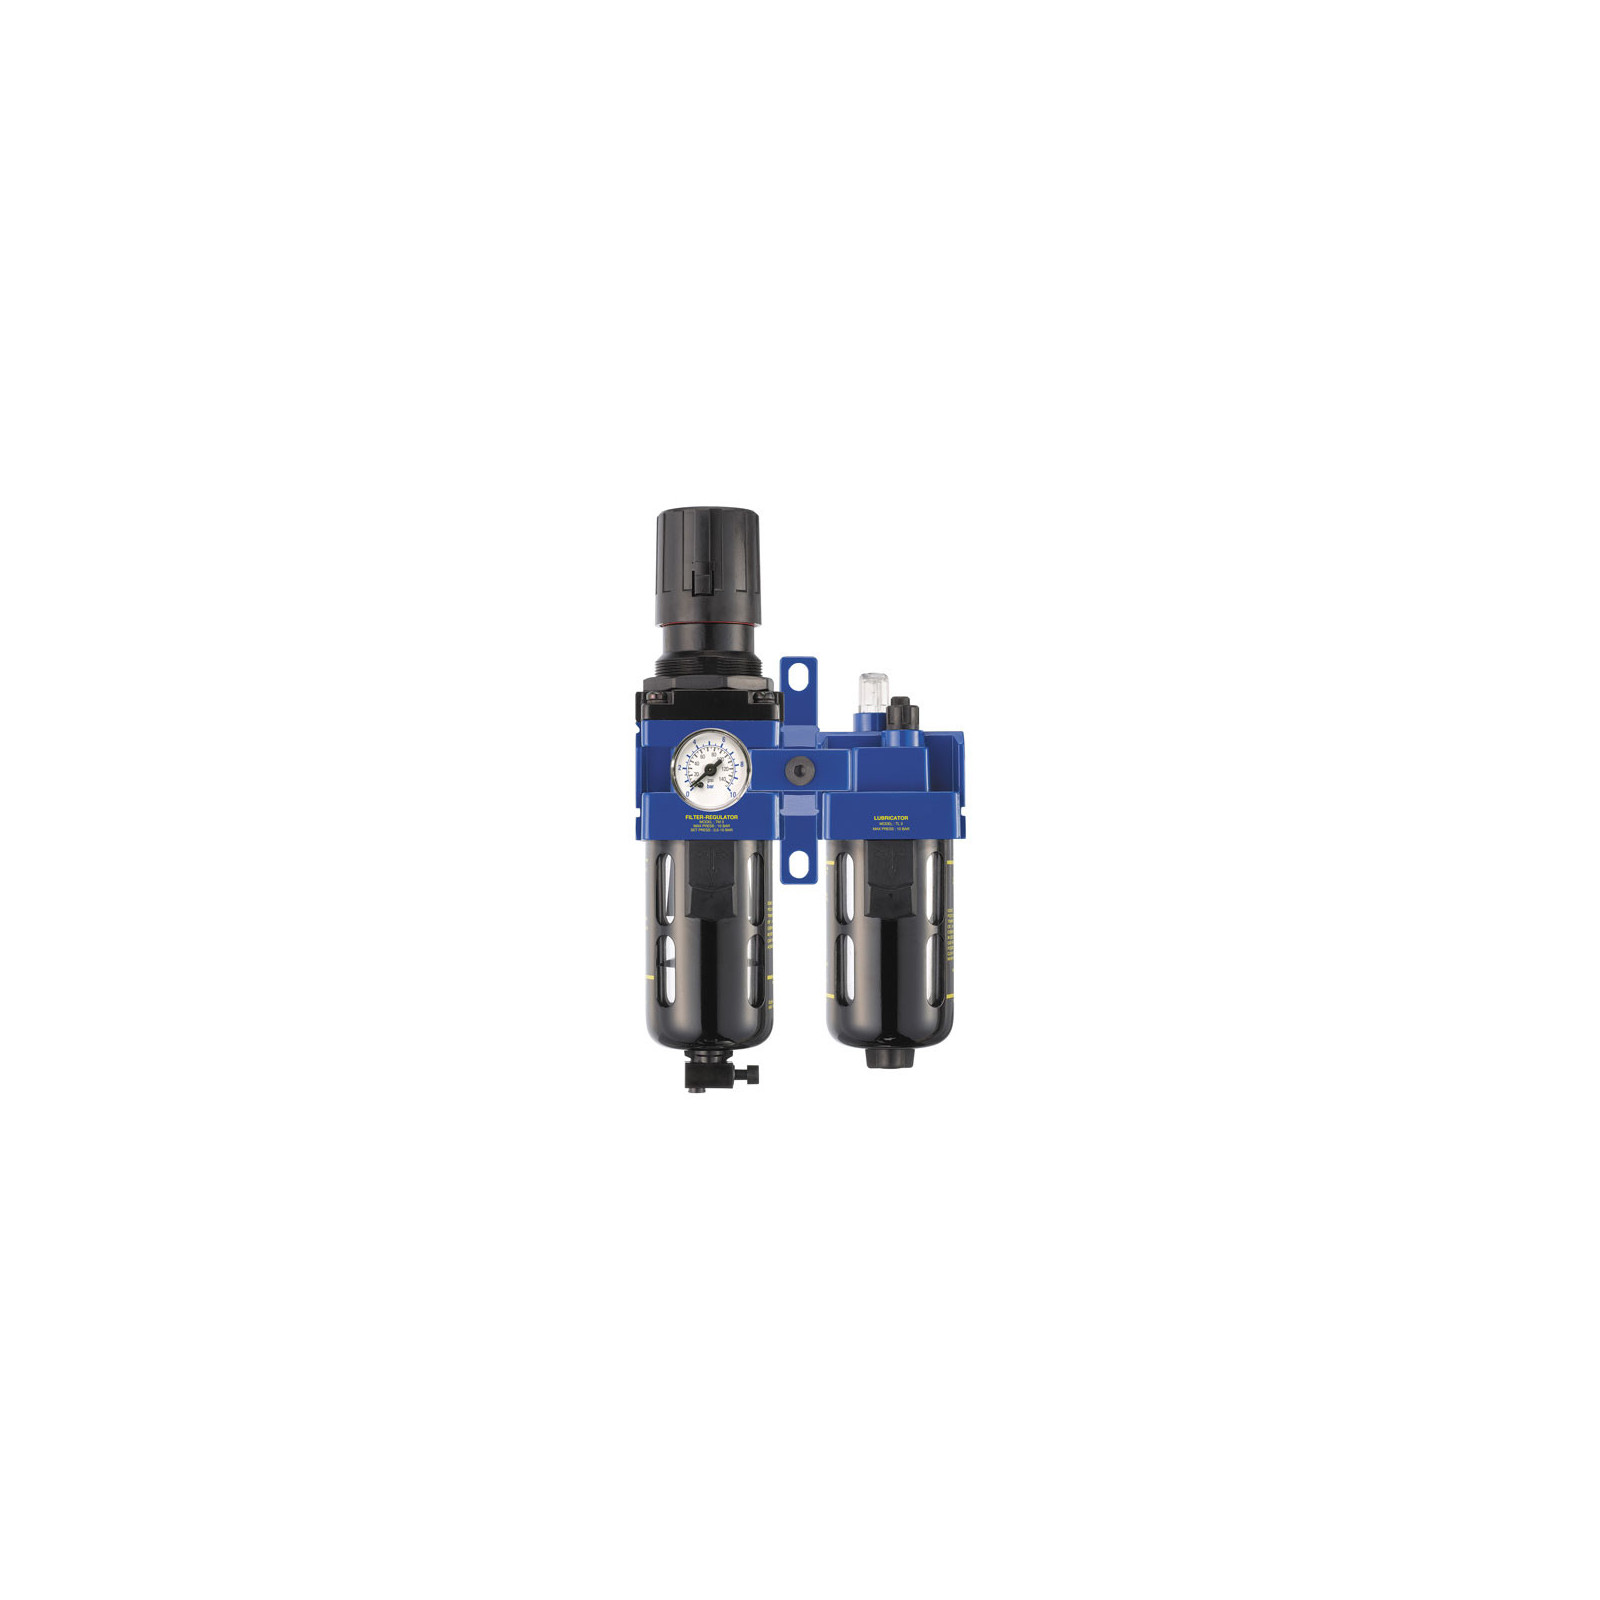 Filtre régulateur - Lubrificateur 1/4 gaz BSP - Facom N.580